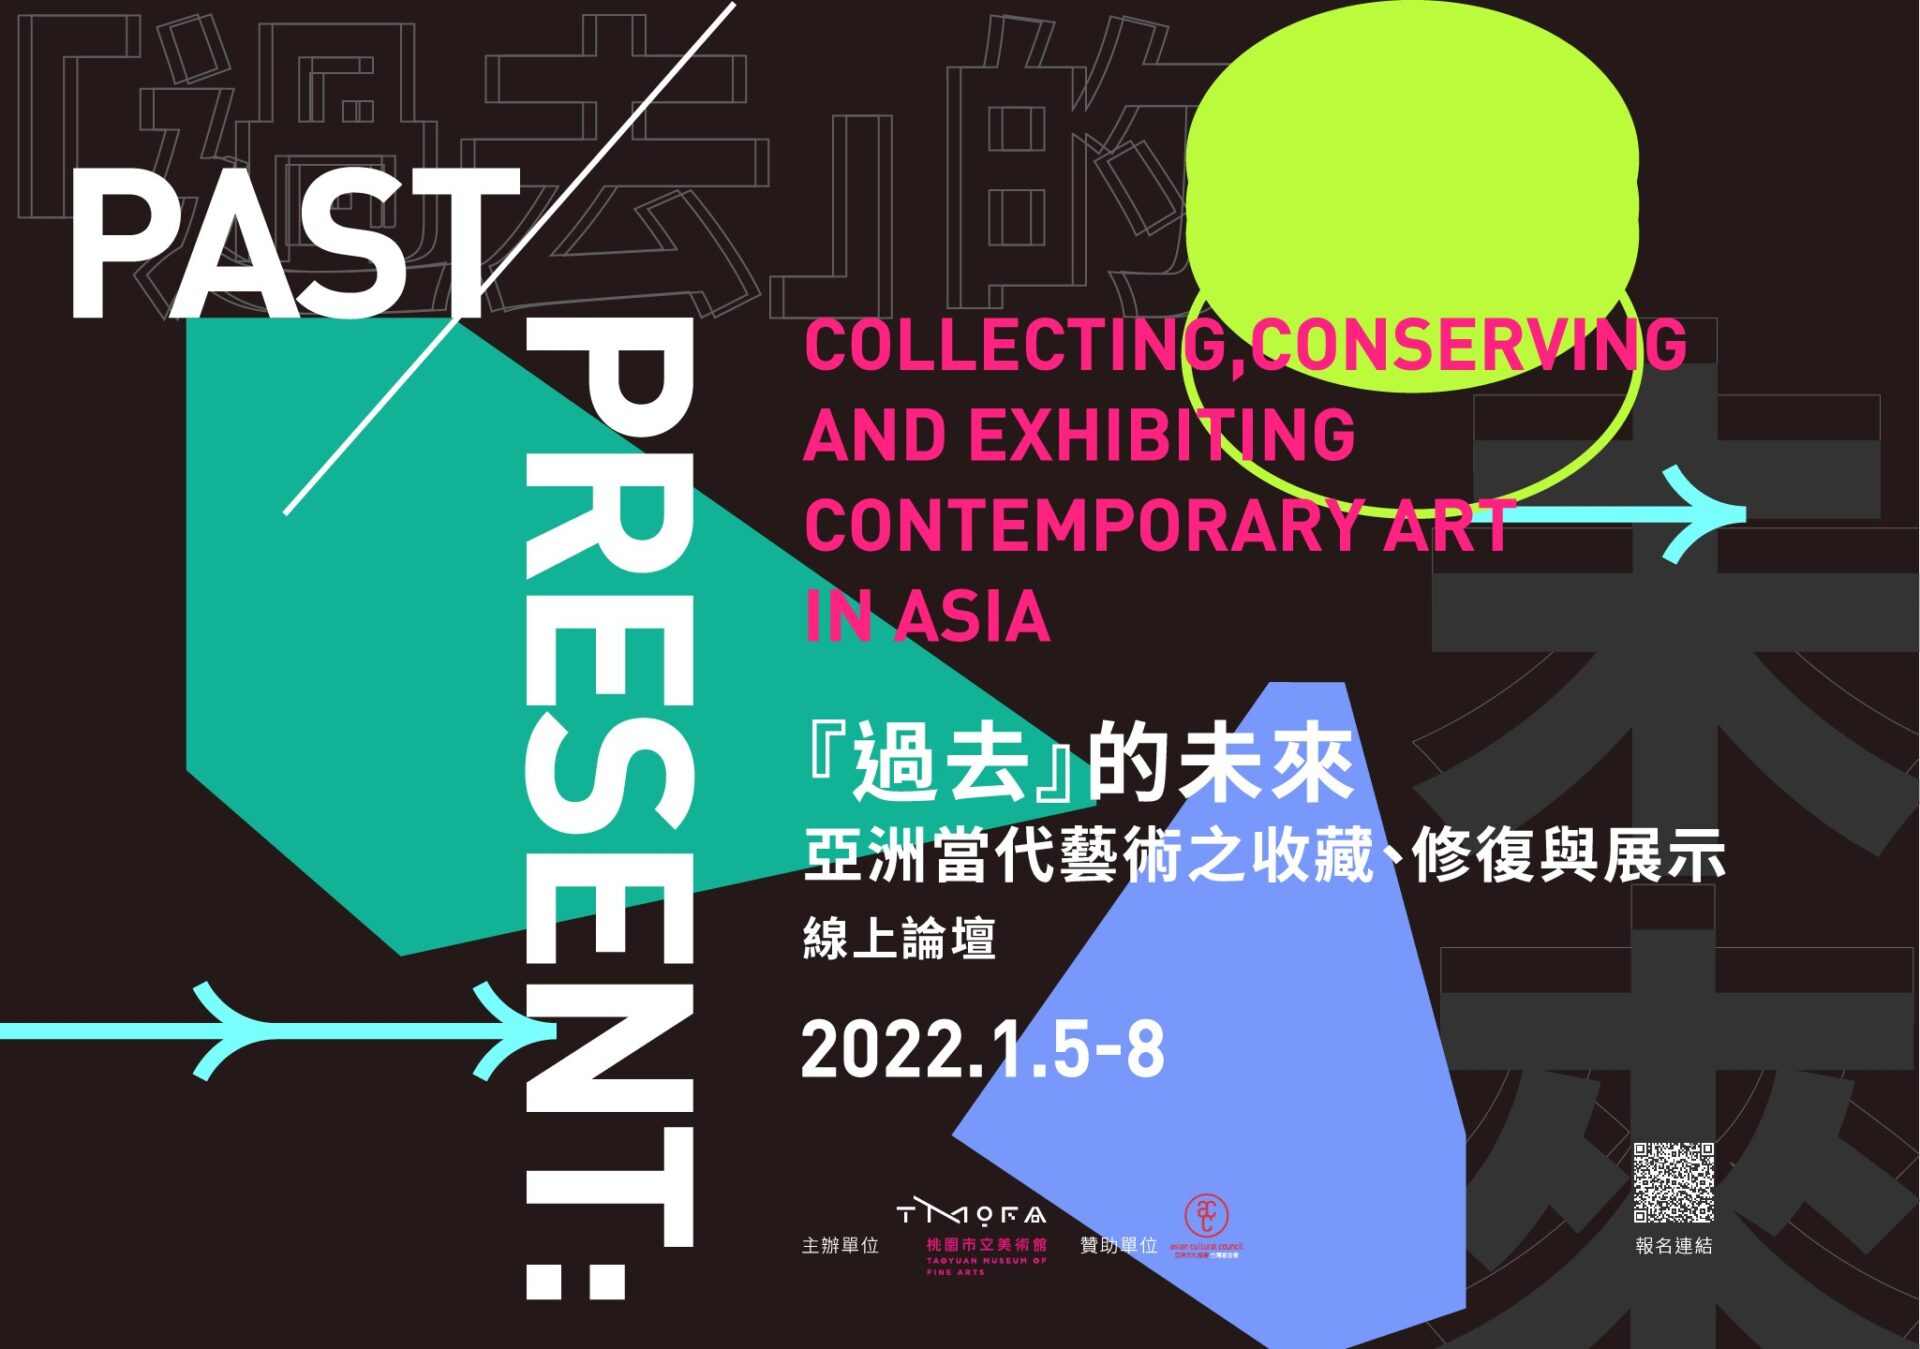 桃園市立美術館：2022/1/5-1/8【「『過去』的未來—亞洲當代藝術之收藏、修復與展示」線上論壇】